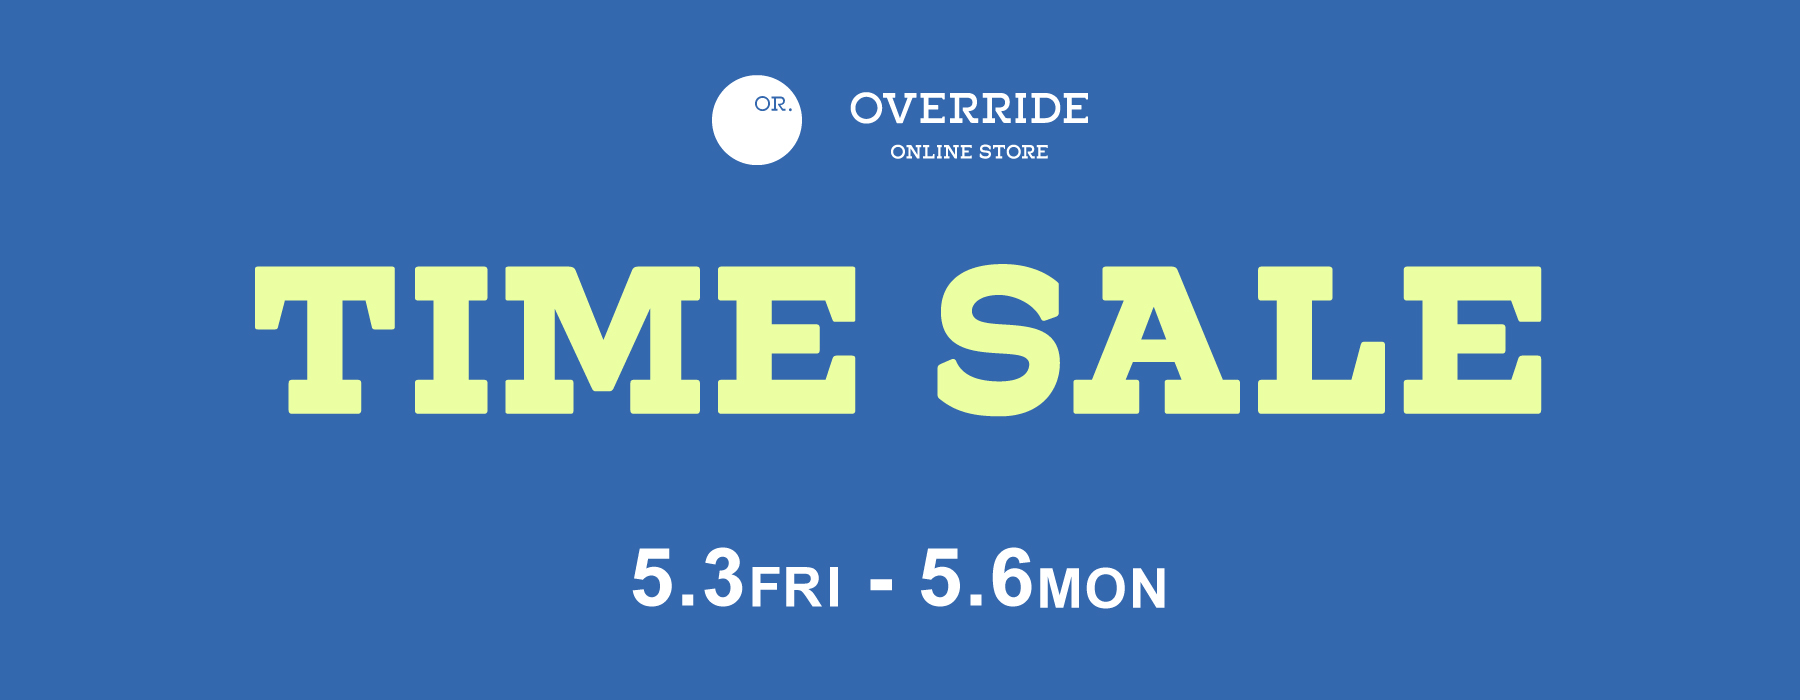 timesale | override